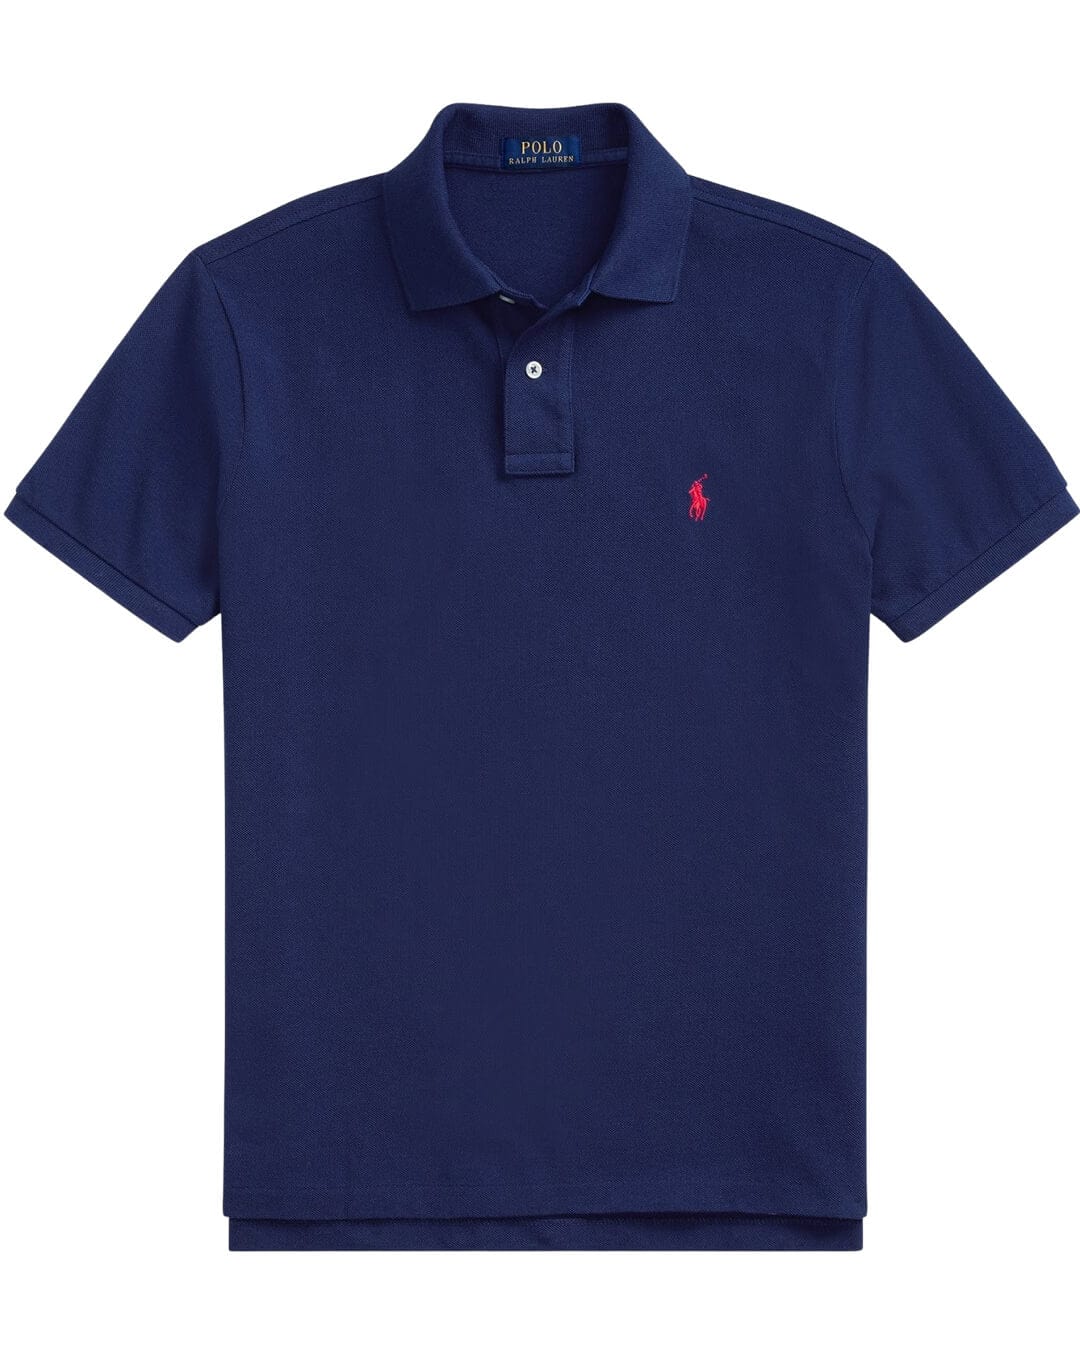 Polo Ralph Lauren Polo Shirts Polo Ralph Lauren Navy Polo Shirt